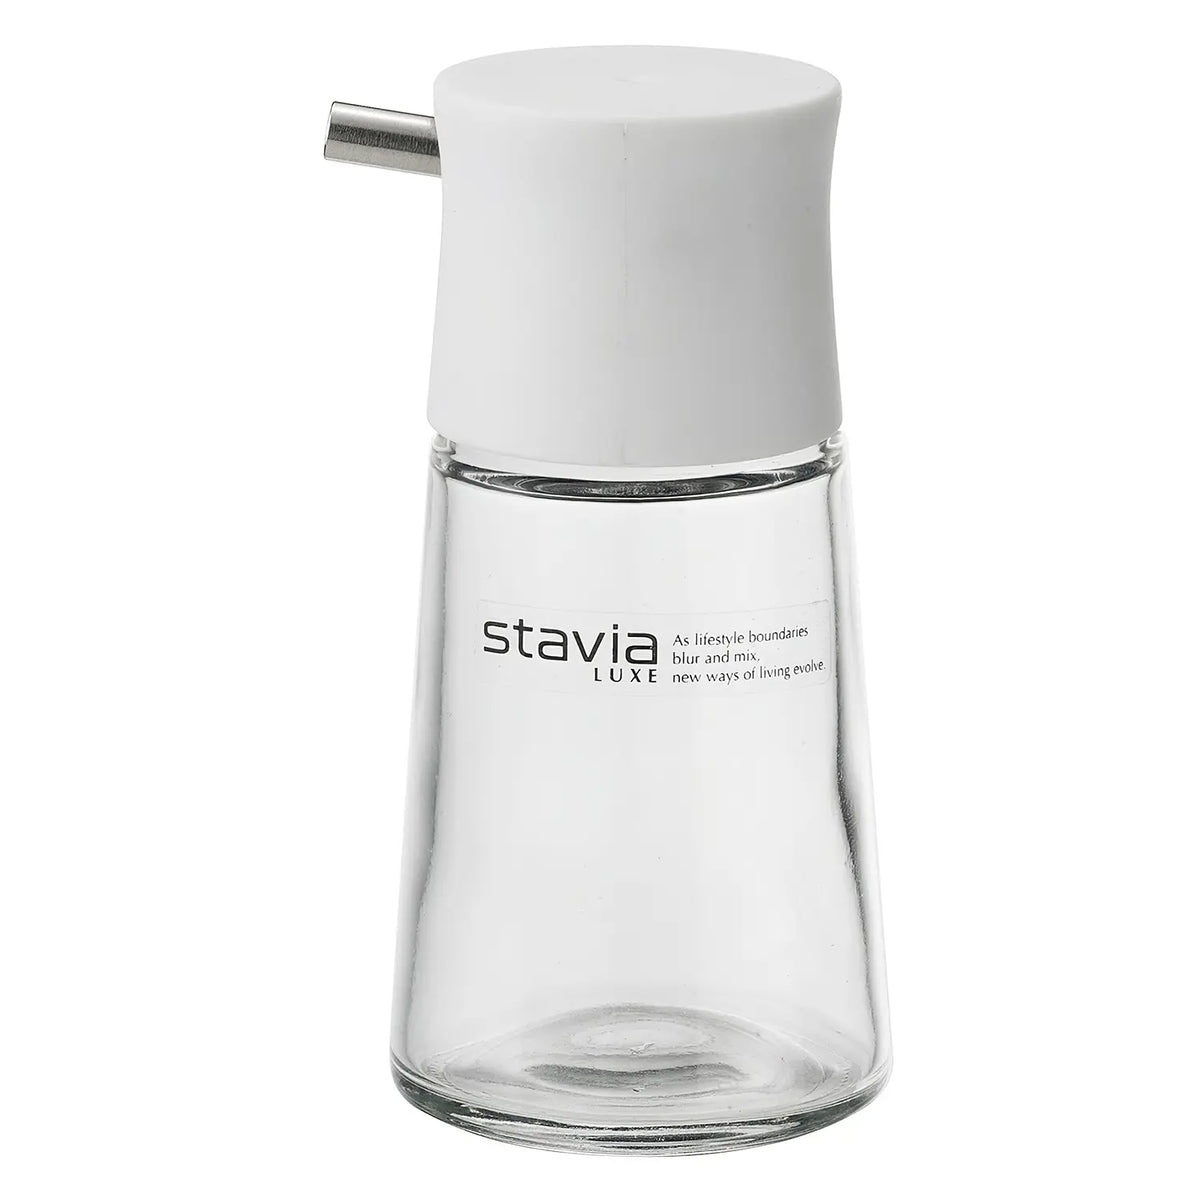 RISU Stavia Luxe Soda Glass Soy Sauce Cruet